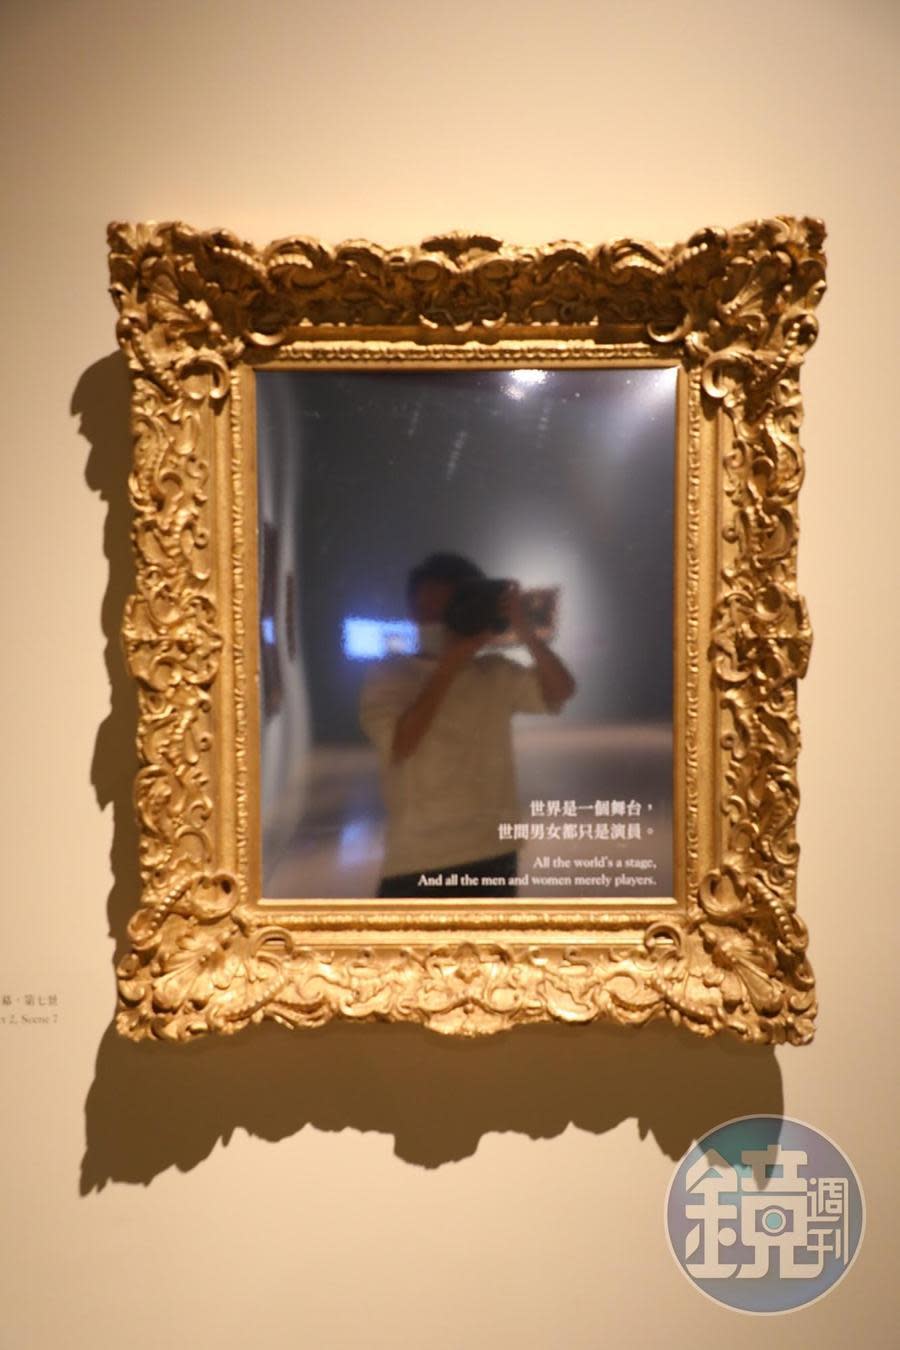 展覽出口處特地設置了一面鏡子，每個人都可自拍一張應景的肖像照。